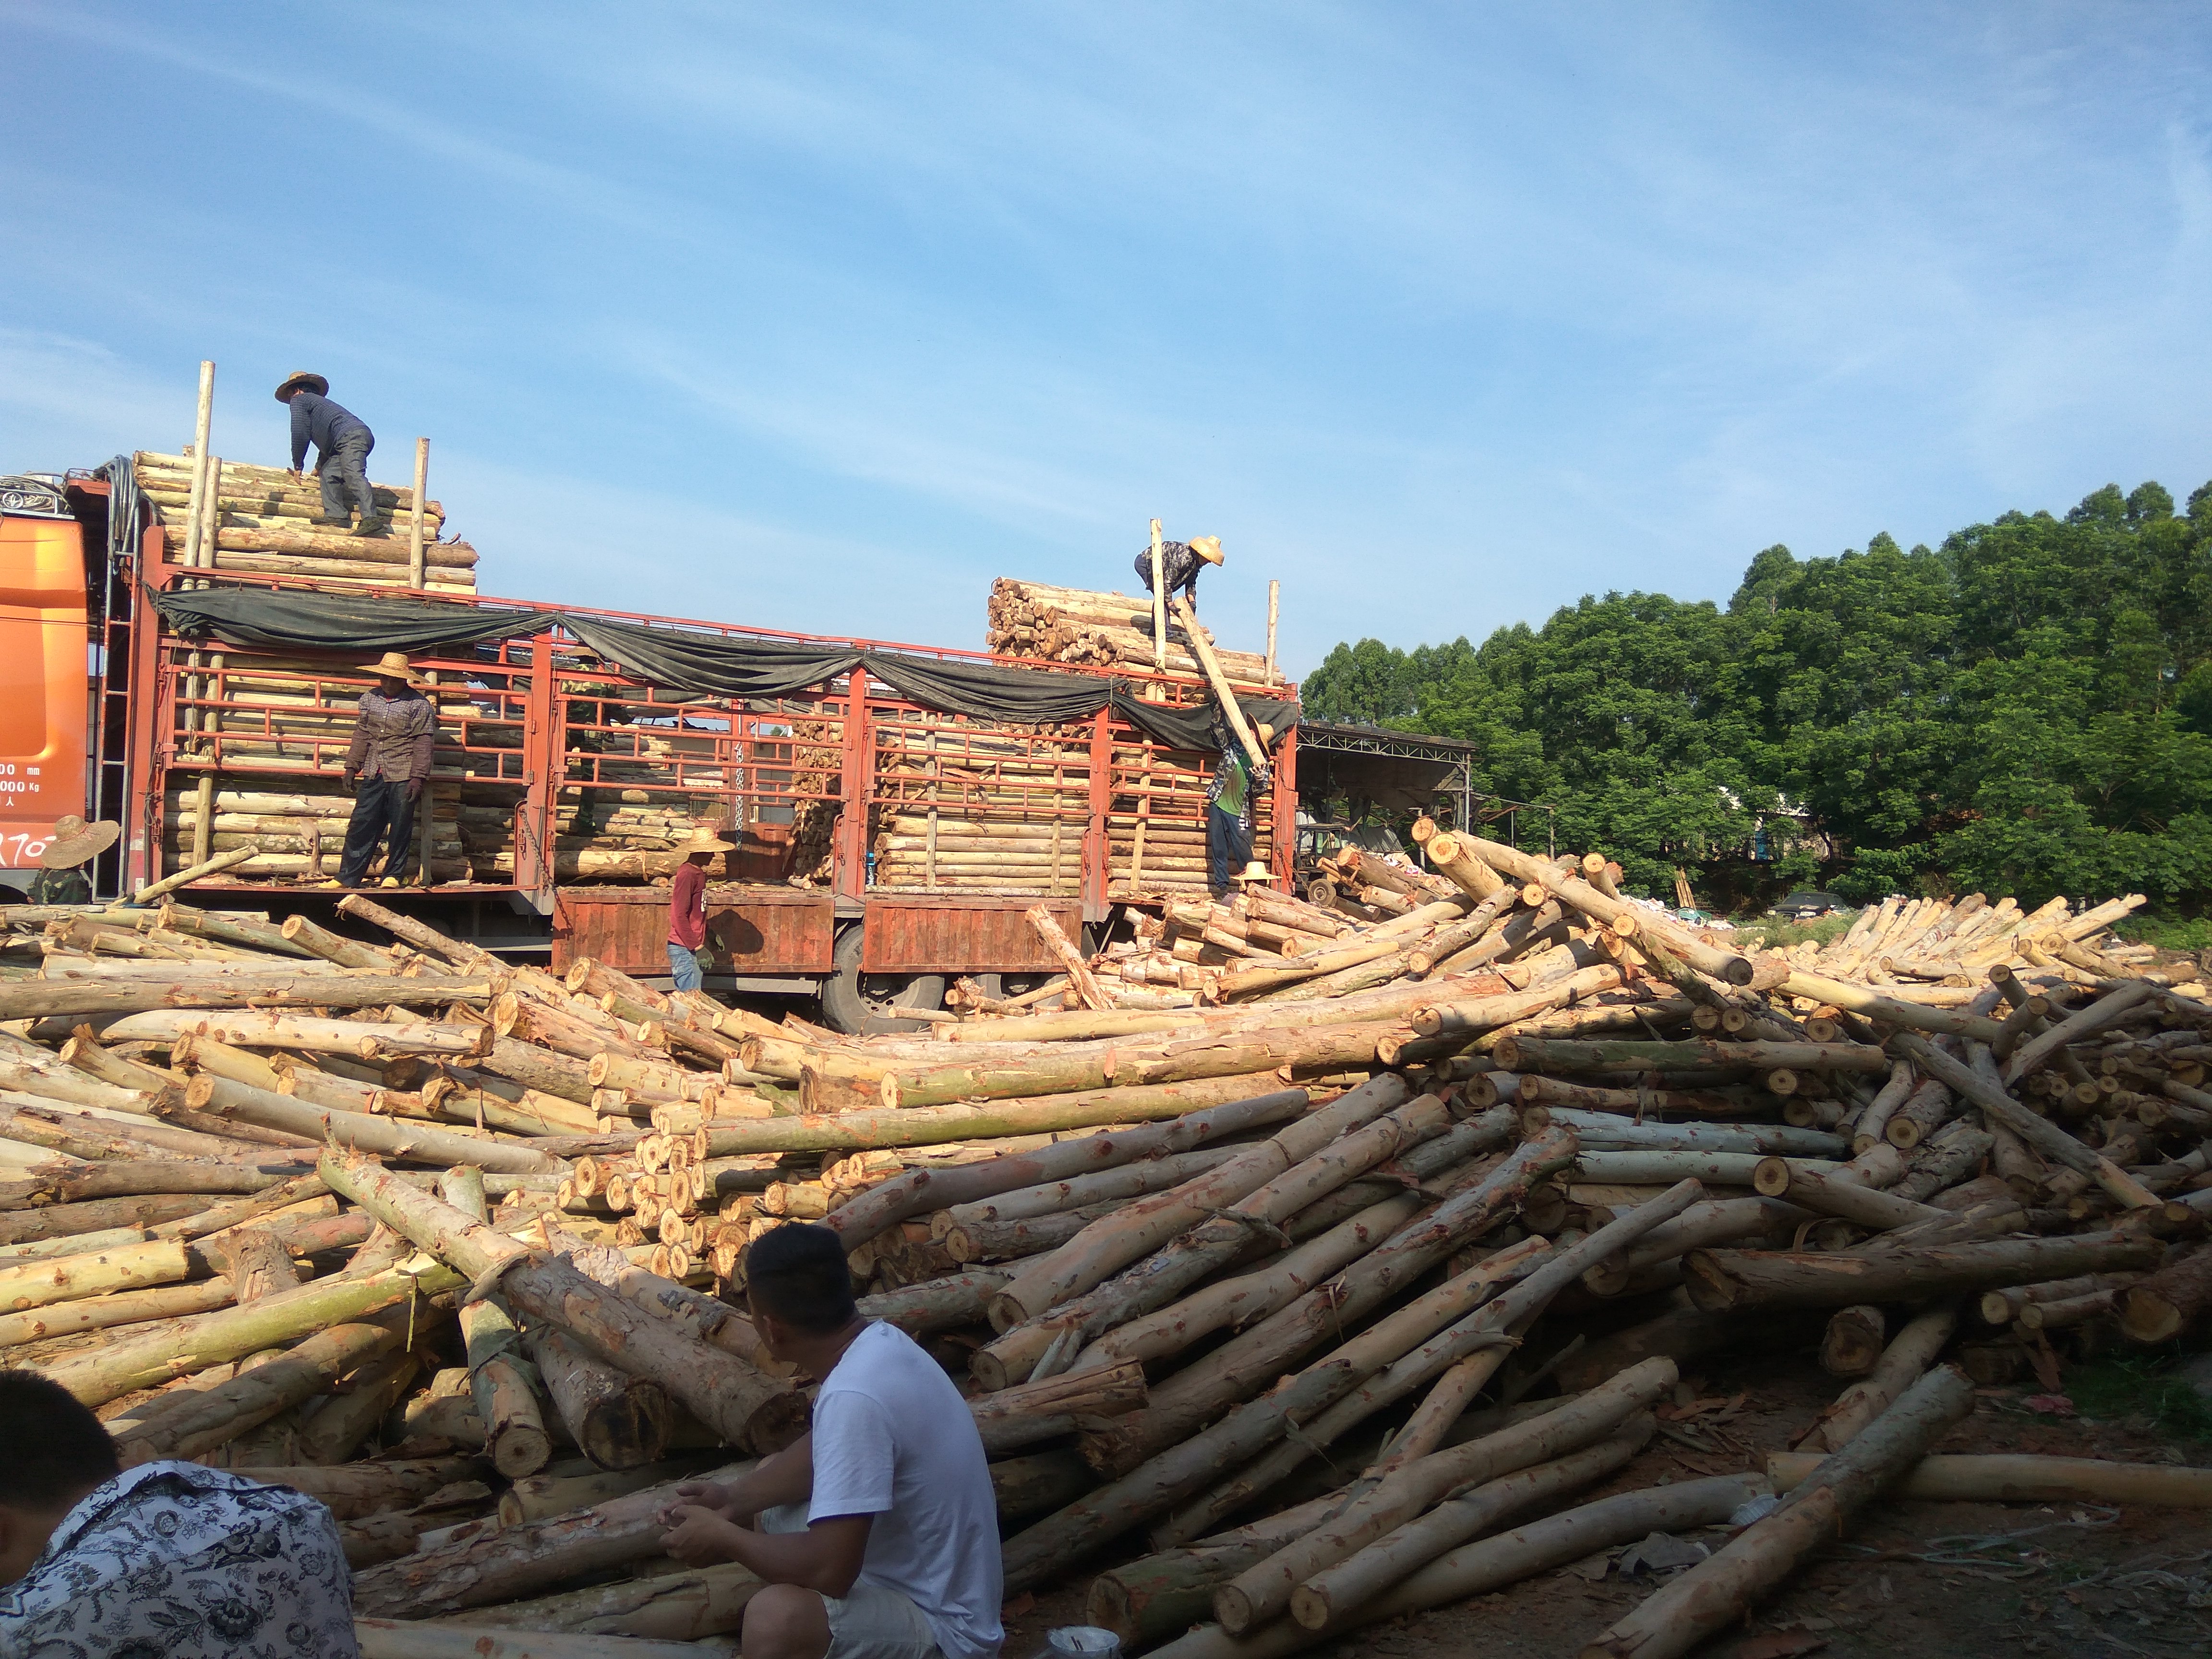 [桉木批发] 桉树原木收购点供货桉木价格0.24元/斤 - 惠农网